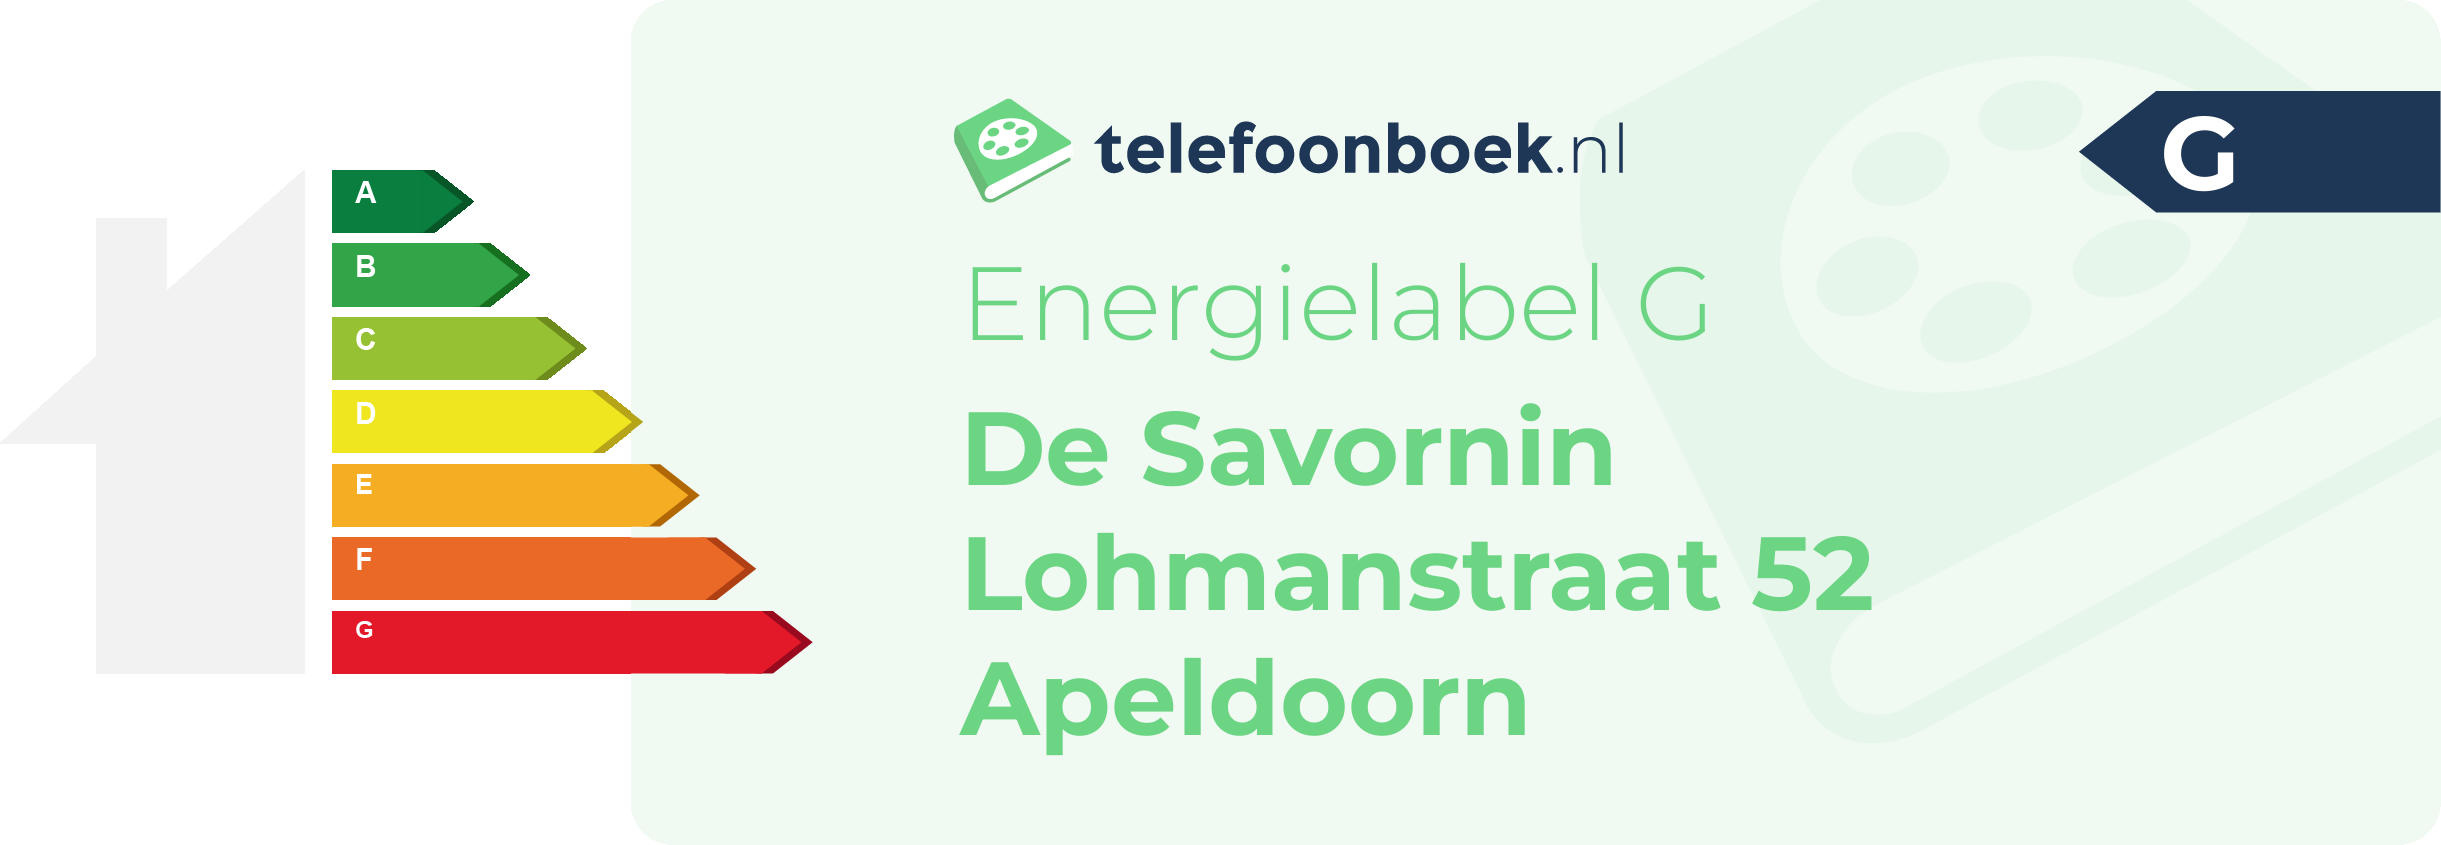 Energielabel De Savornin Lohmanstraat 52 Apeldoorn